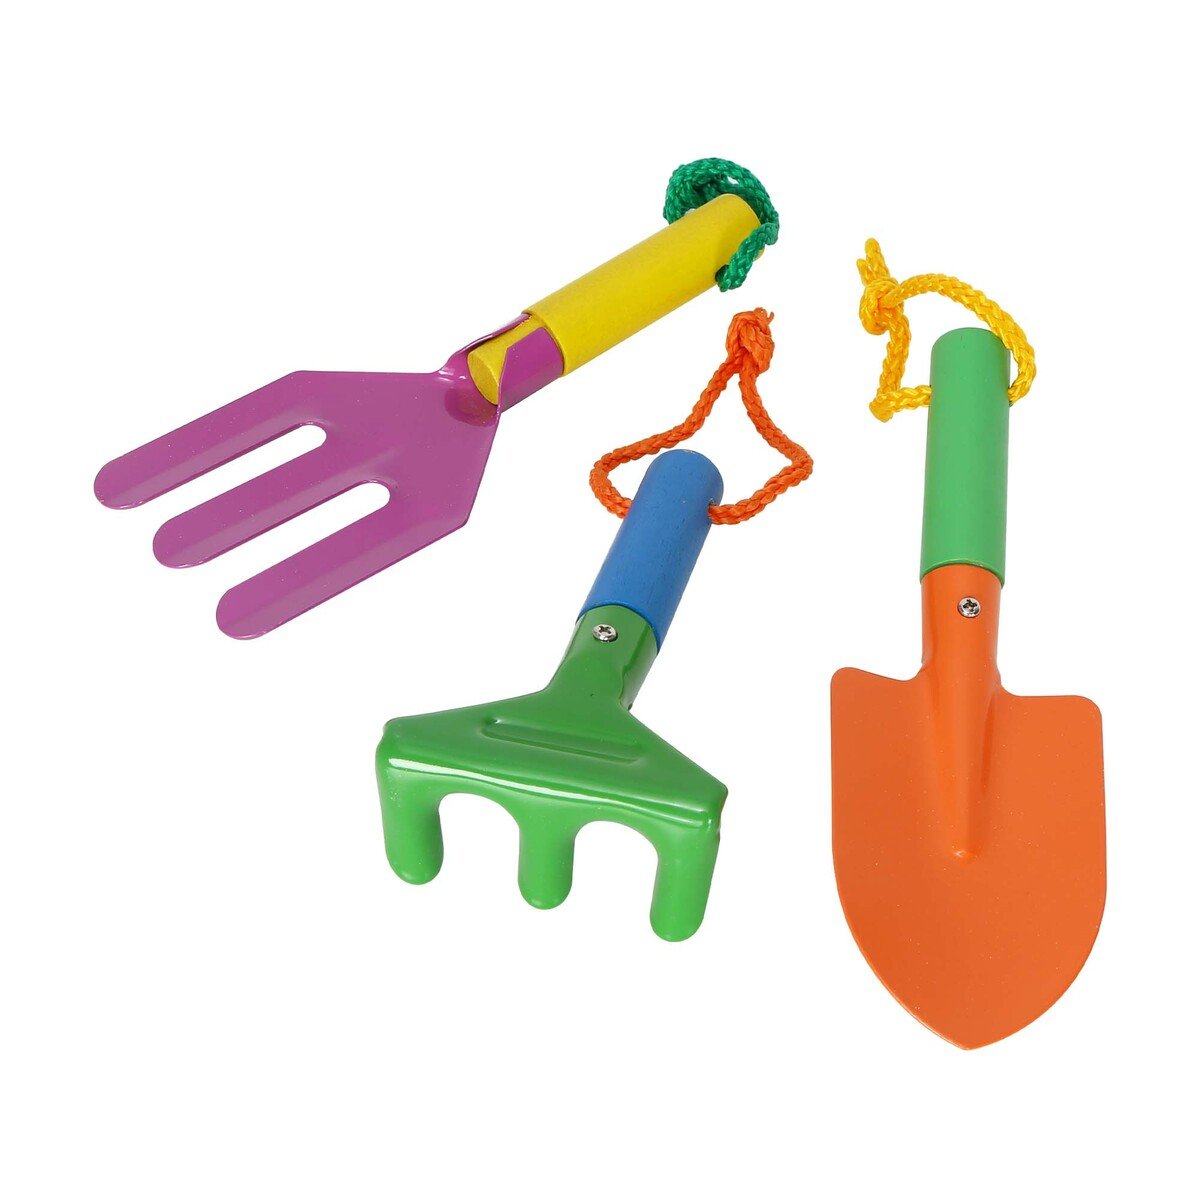 جرين ساند مجموعة أدوات يدوية للحدائق للأطفال 30116